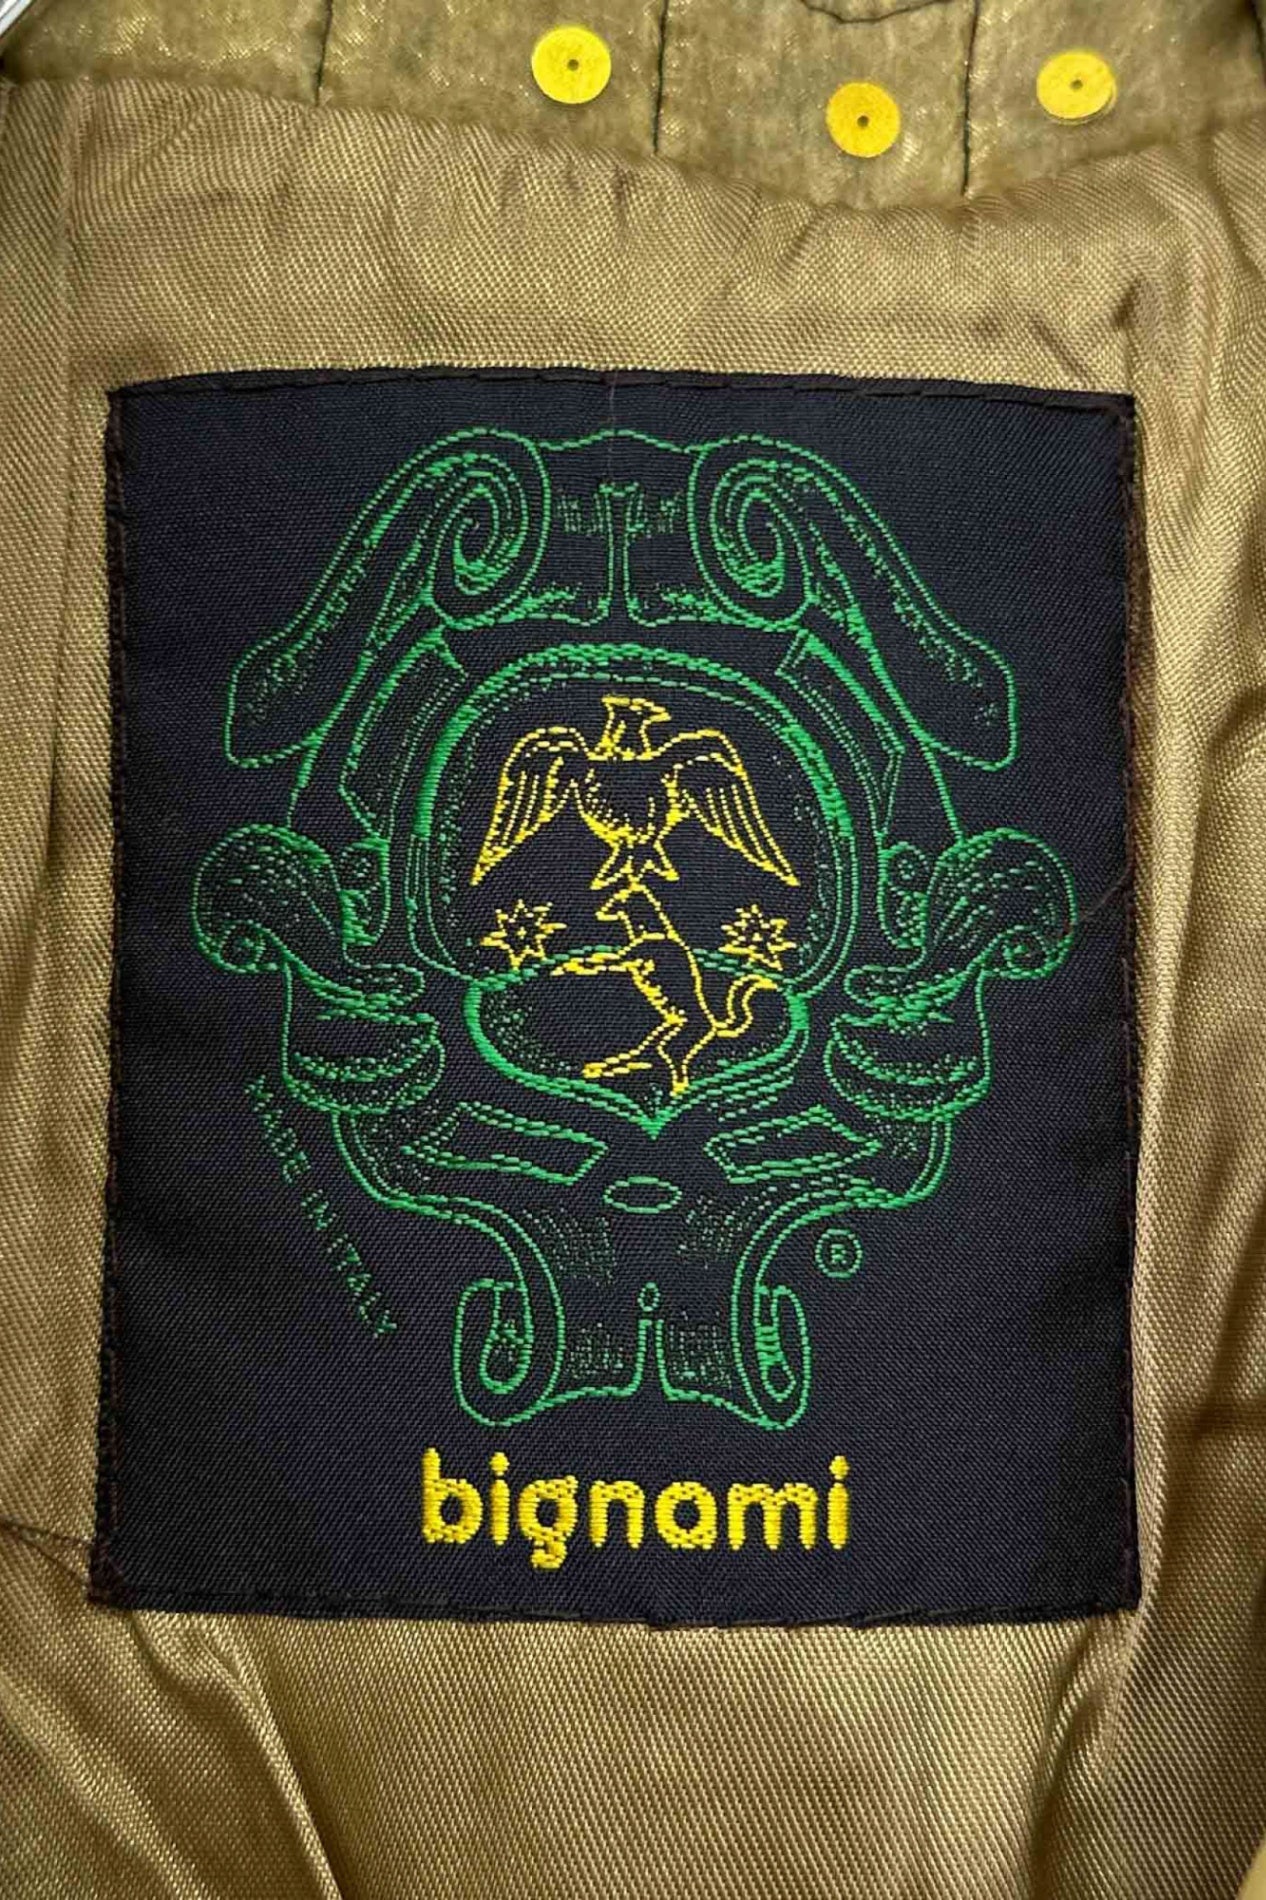 Made in ITALY bignami jacket